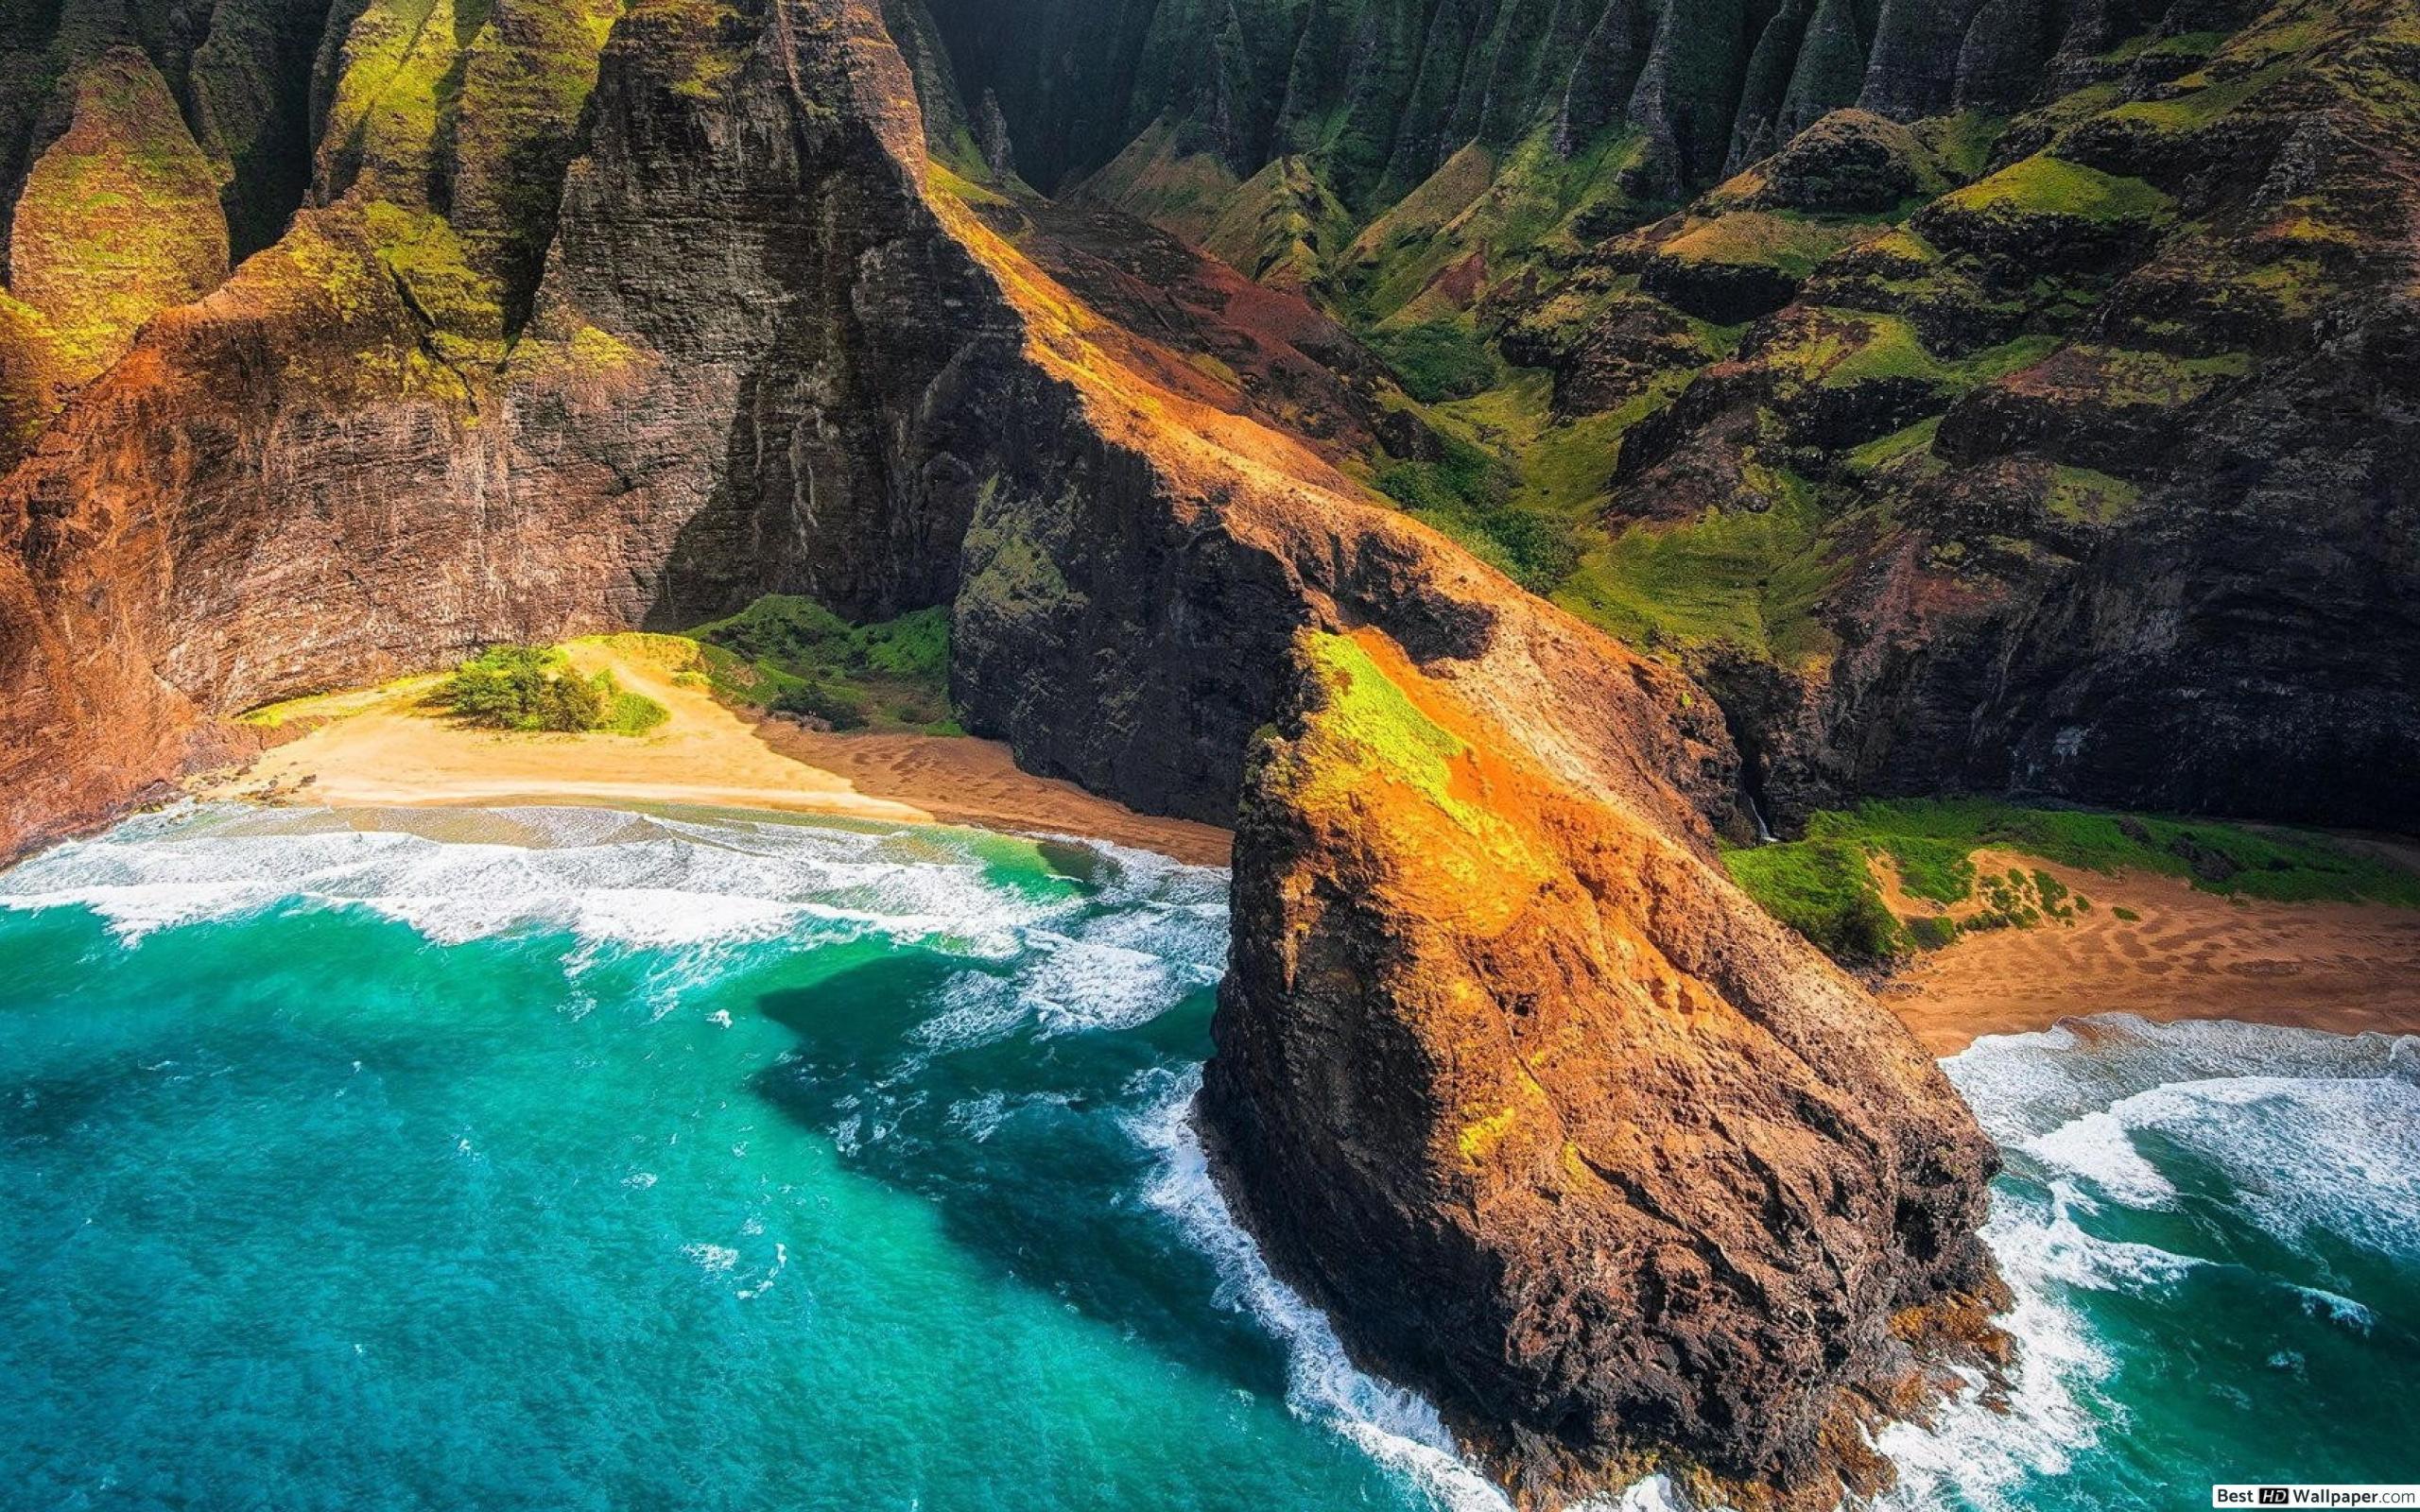 Hawaii là nơi tuyệt vời để nghỉ ngơi, thư giãn và đắm chìm vào thiên nhiên. Hãy cắm mắt vào hình nền Hawaii đầy màu sắc để tưởng tượng về kỳ nghỉ tuyệt vời của bạn.